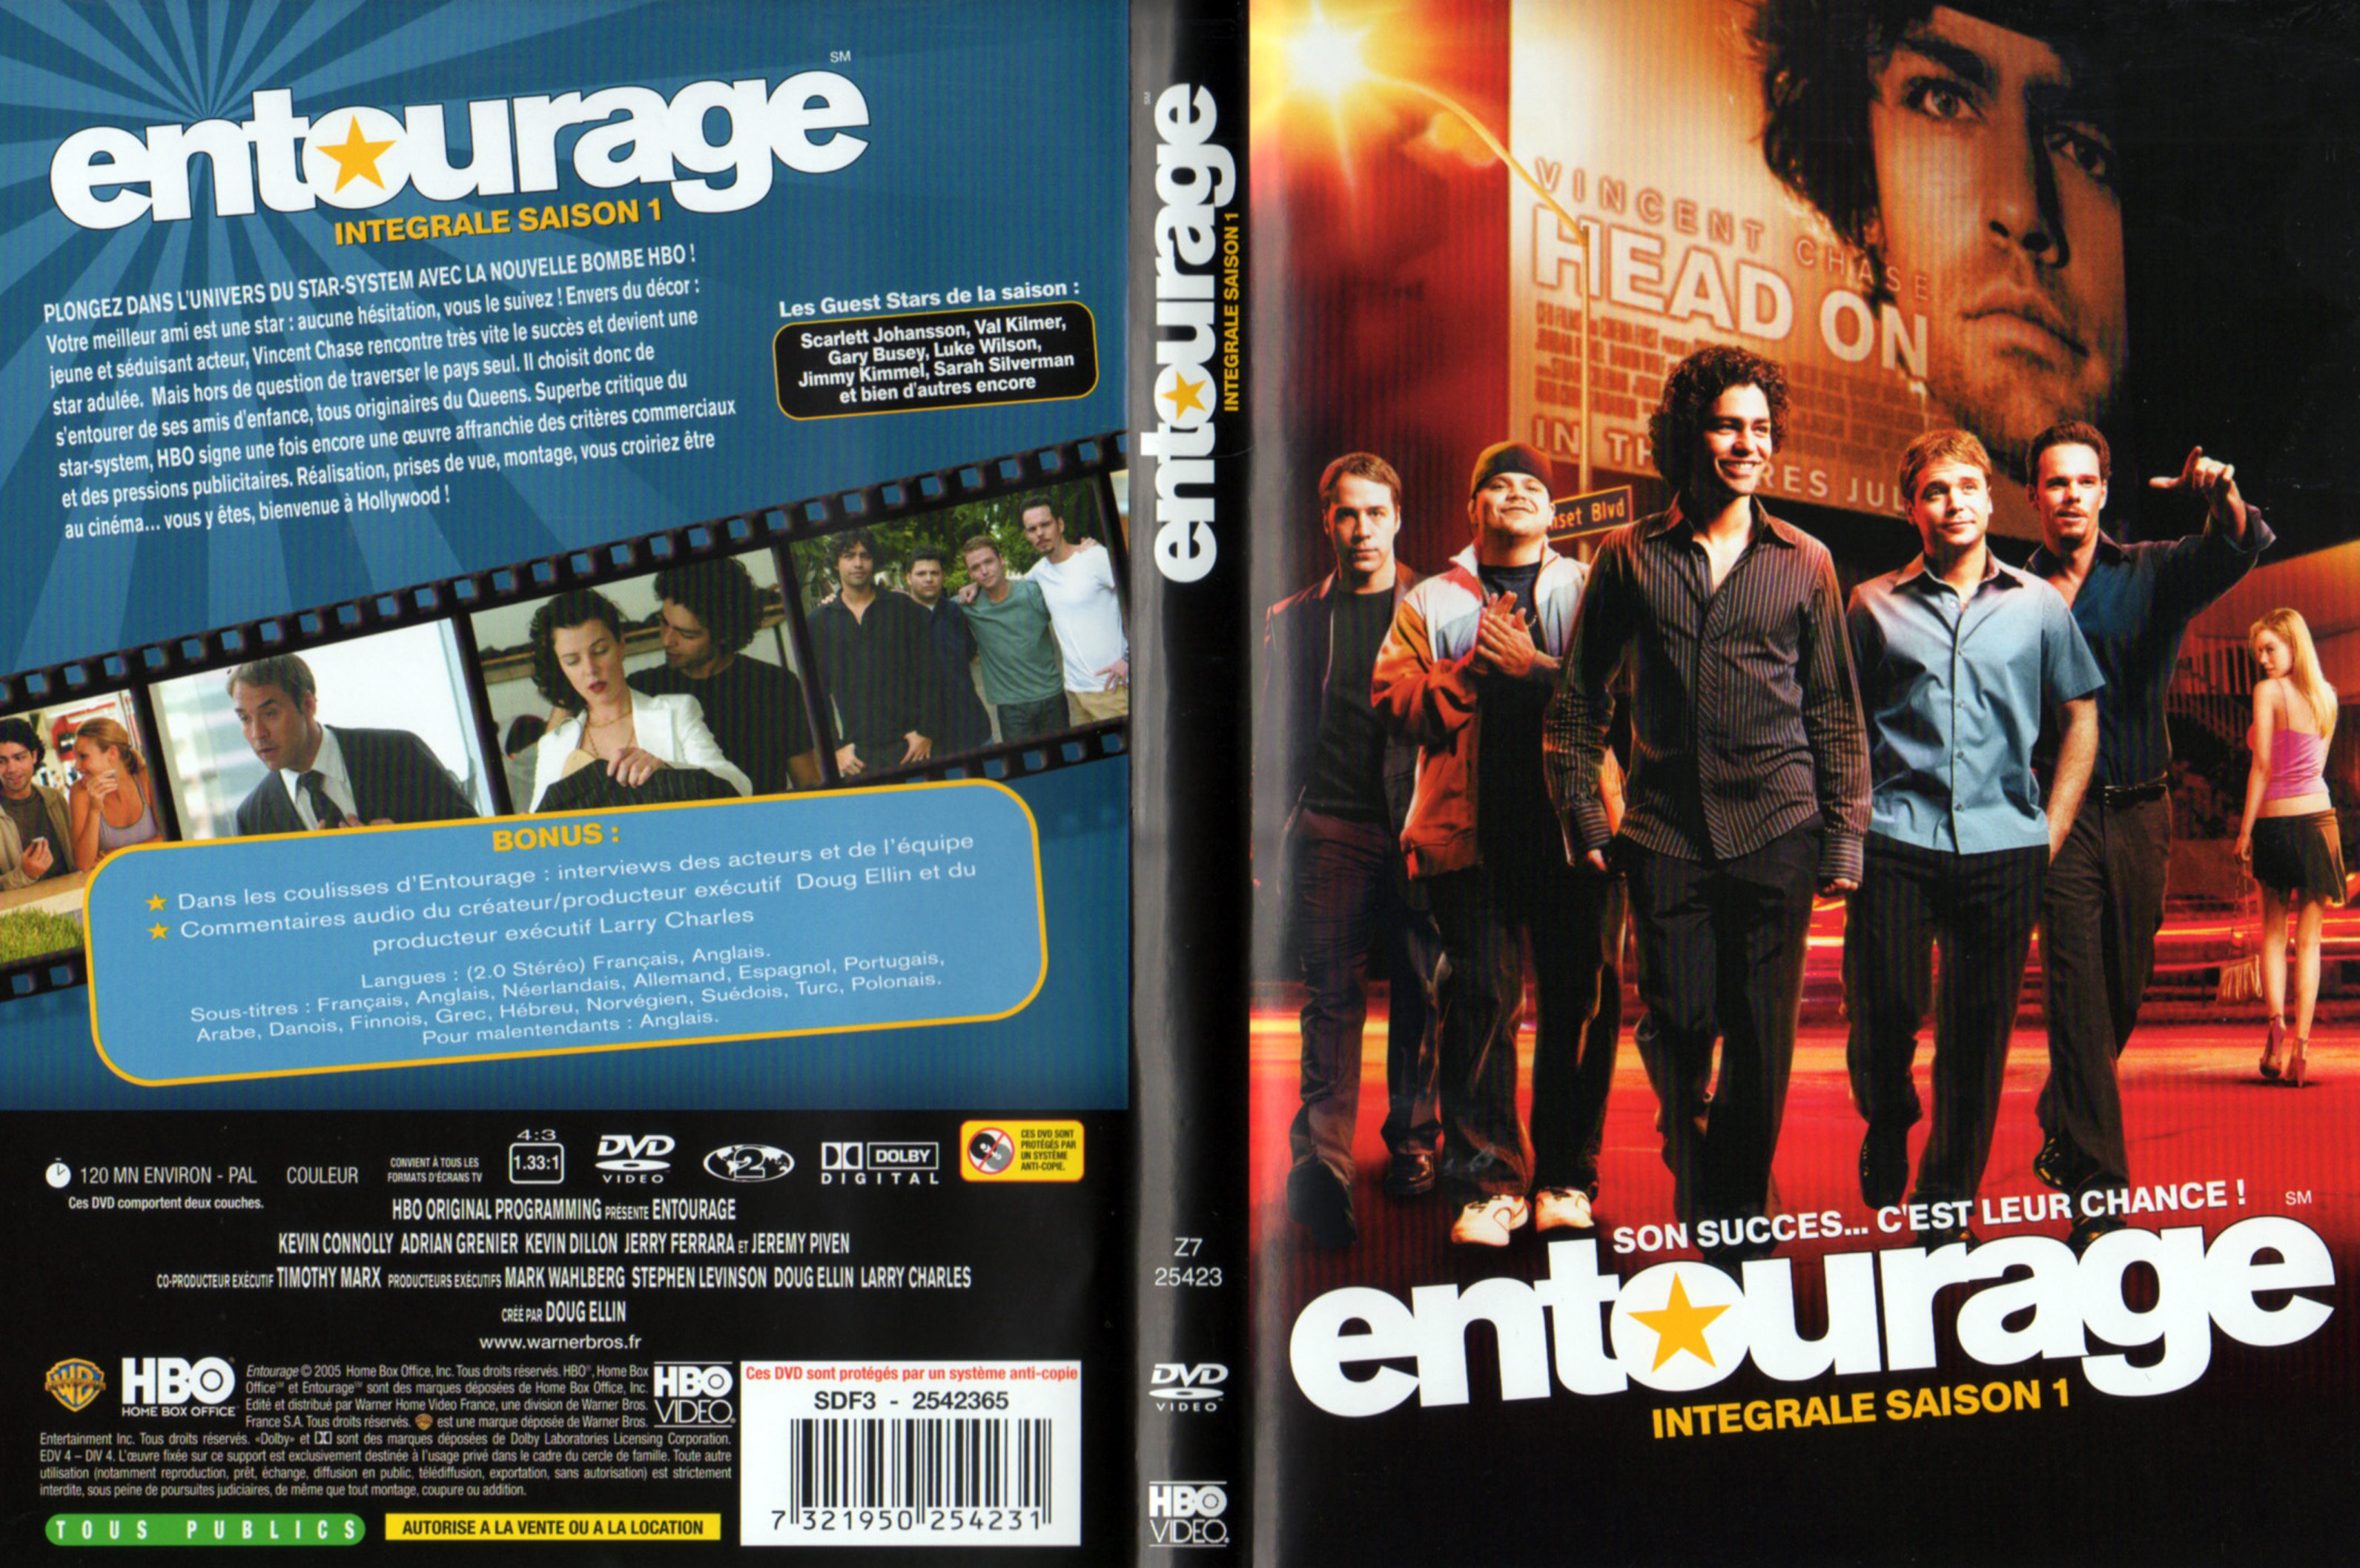 Jaquette DVD Entourage Saison 1